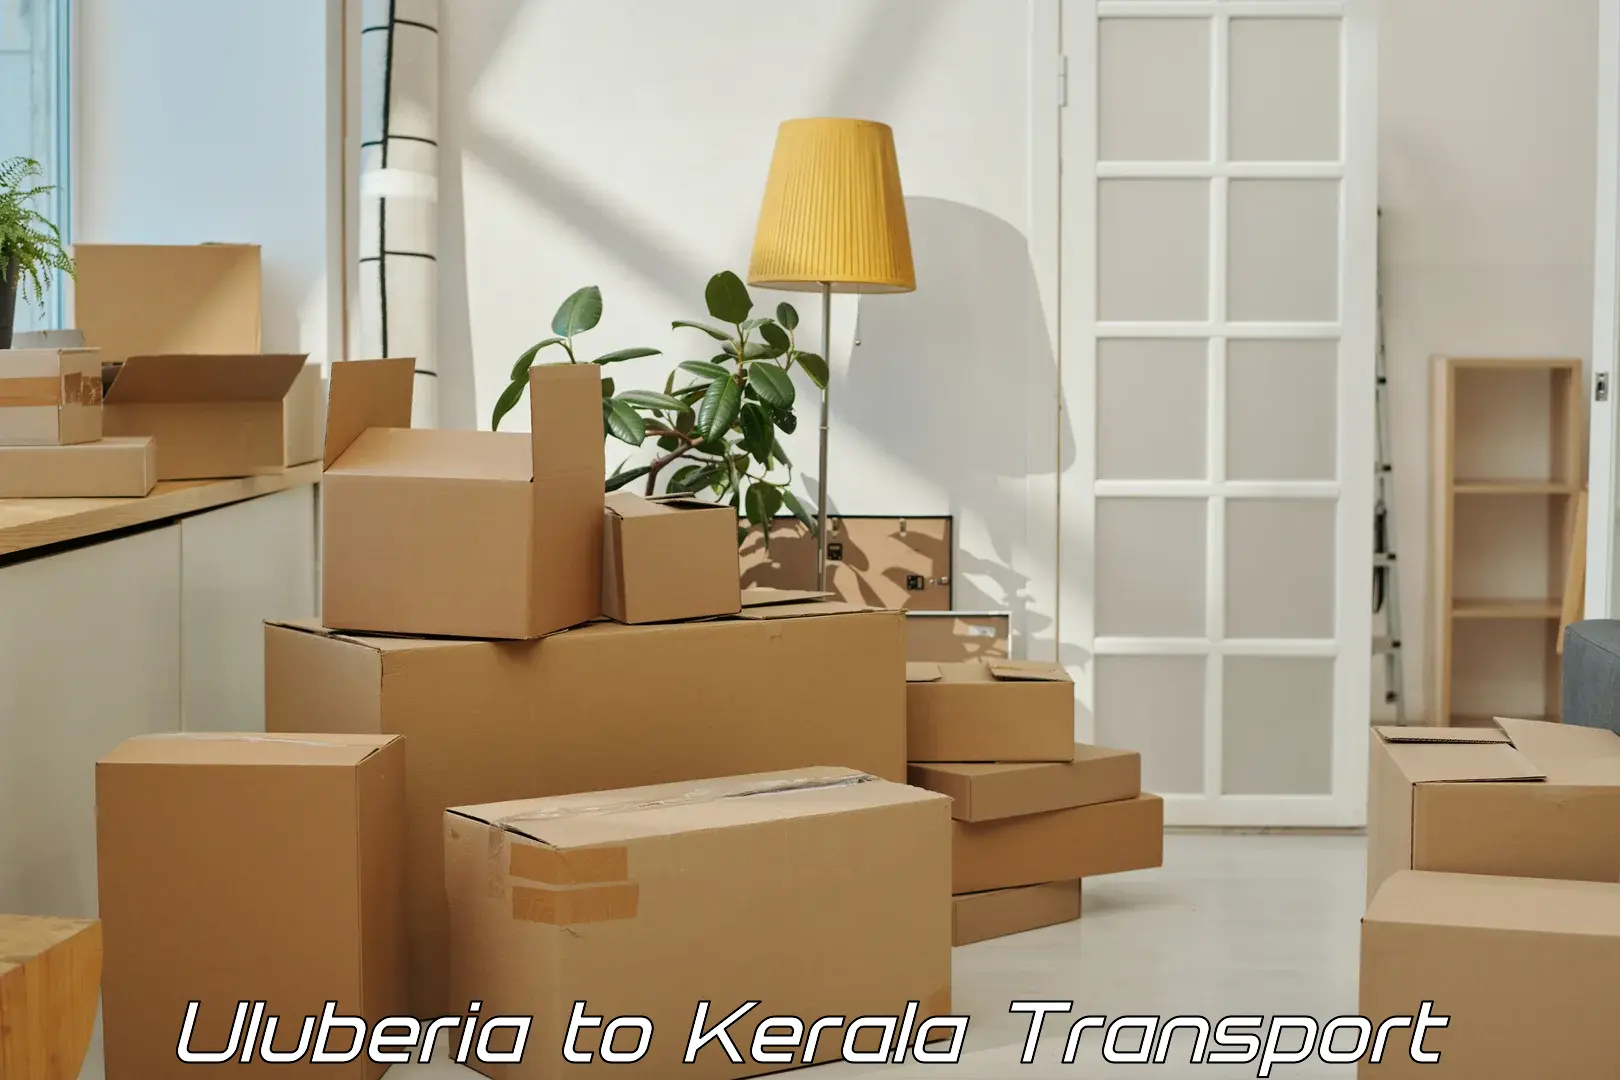 Transport in sharing Uluberia to Kerala